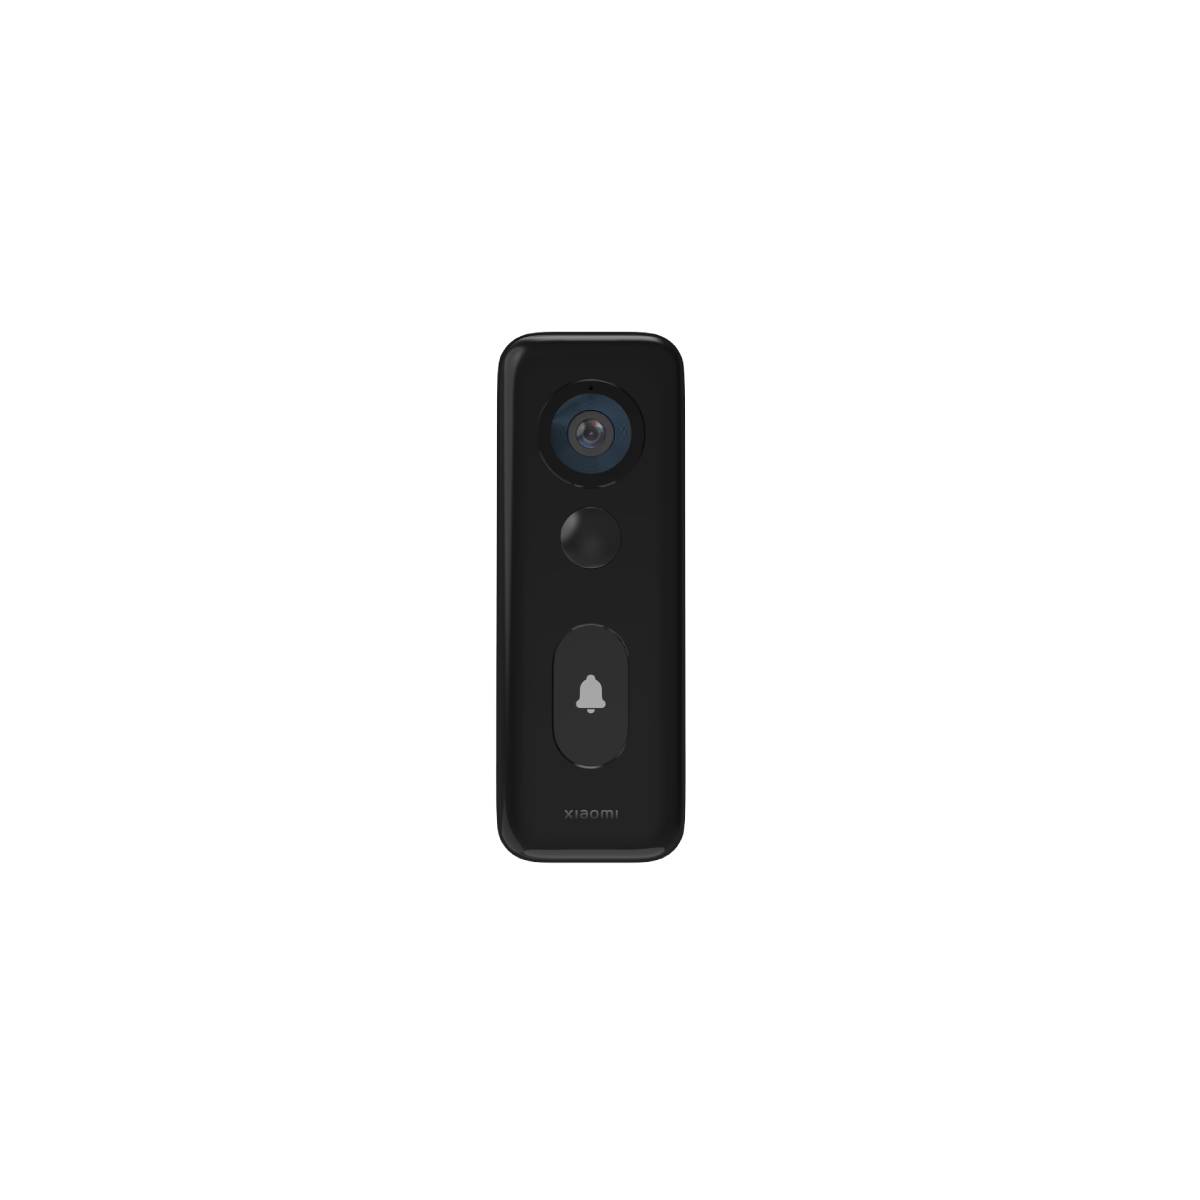 Xiaomi Smart Doorbell 3S